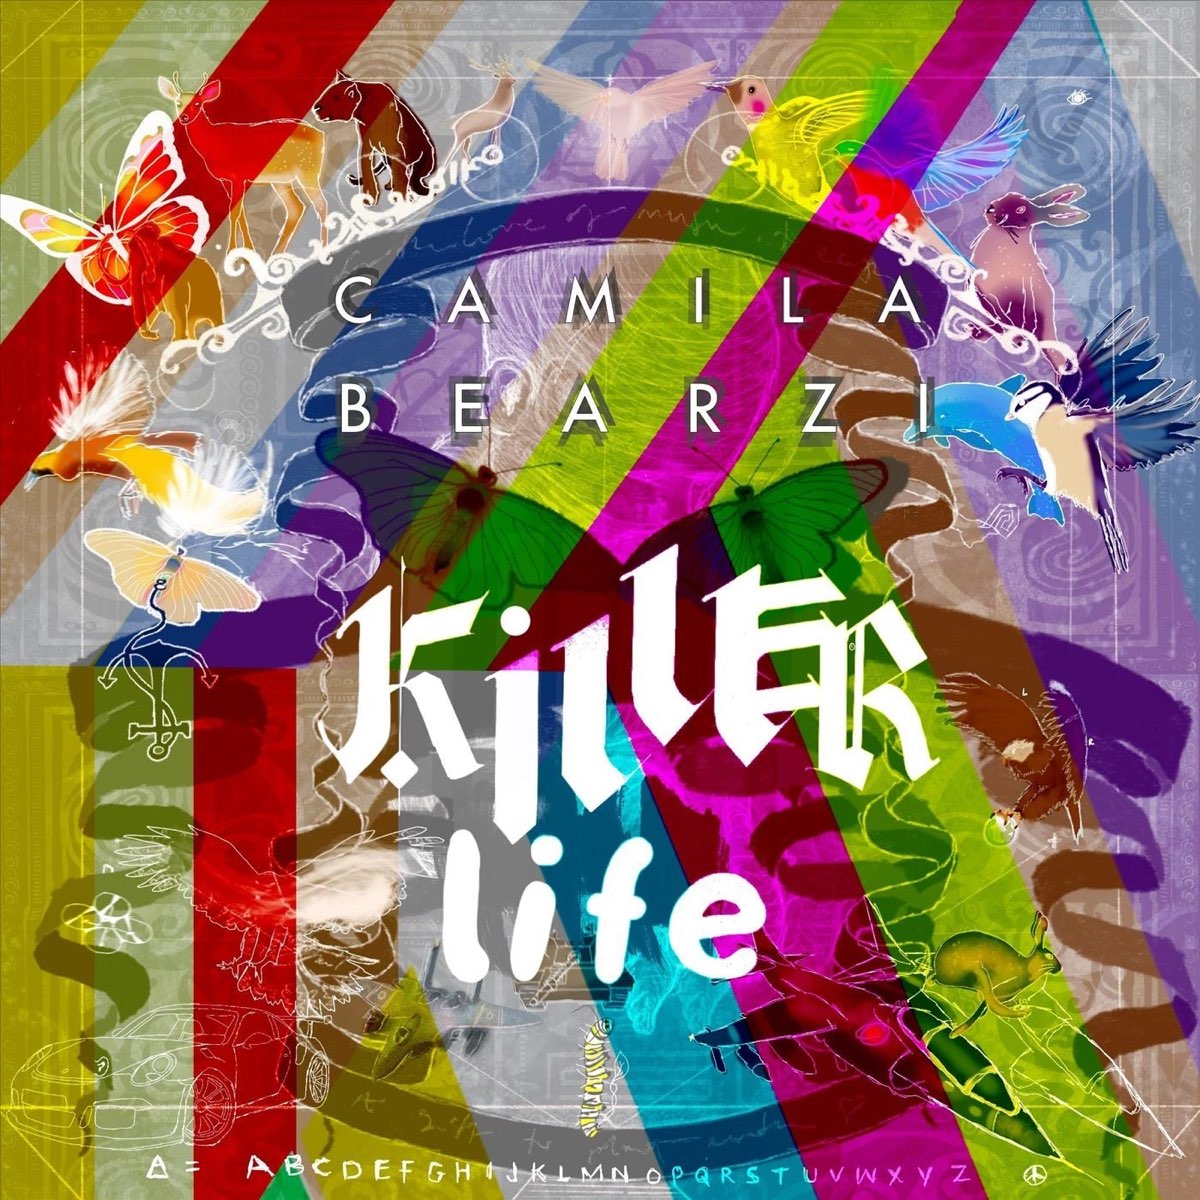 Killer life. Life is Killing me album. Life is Killing me Label.